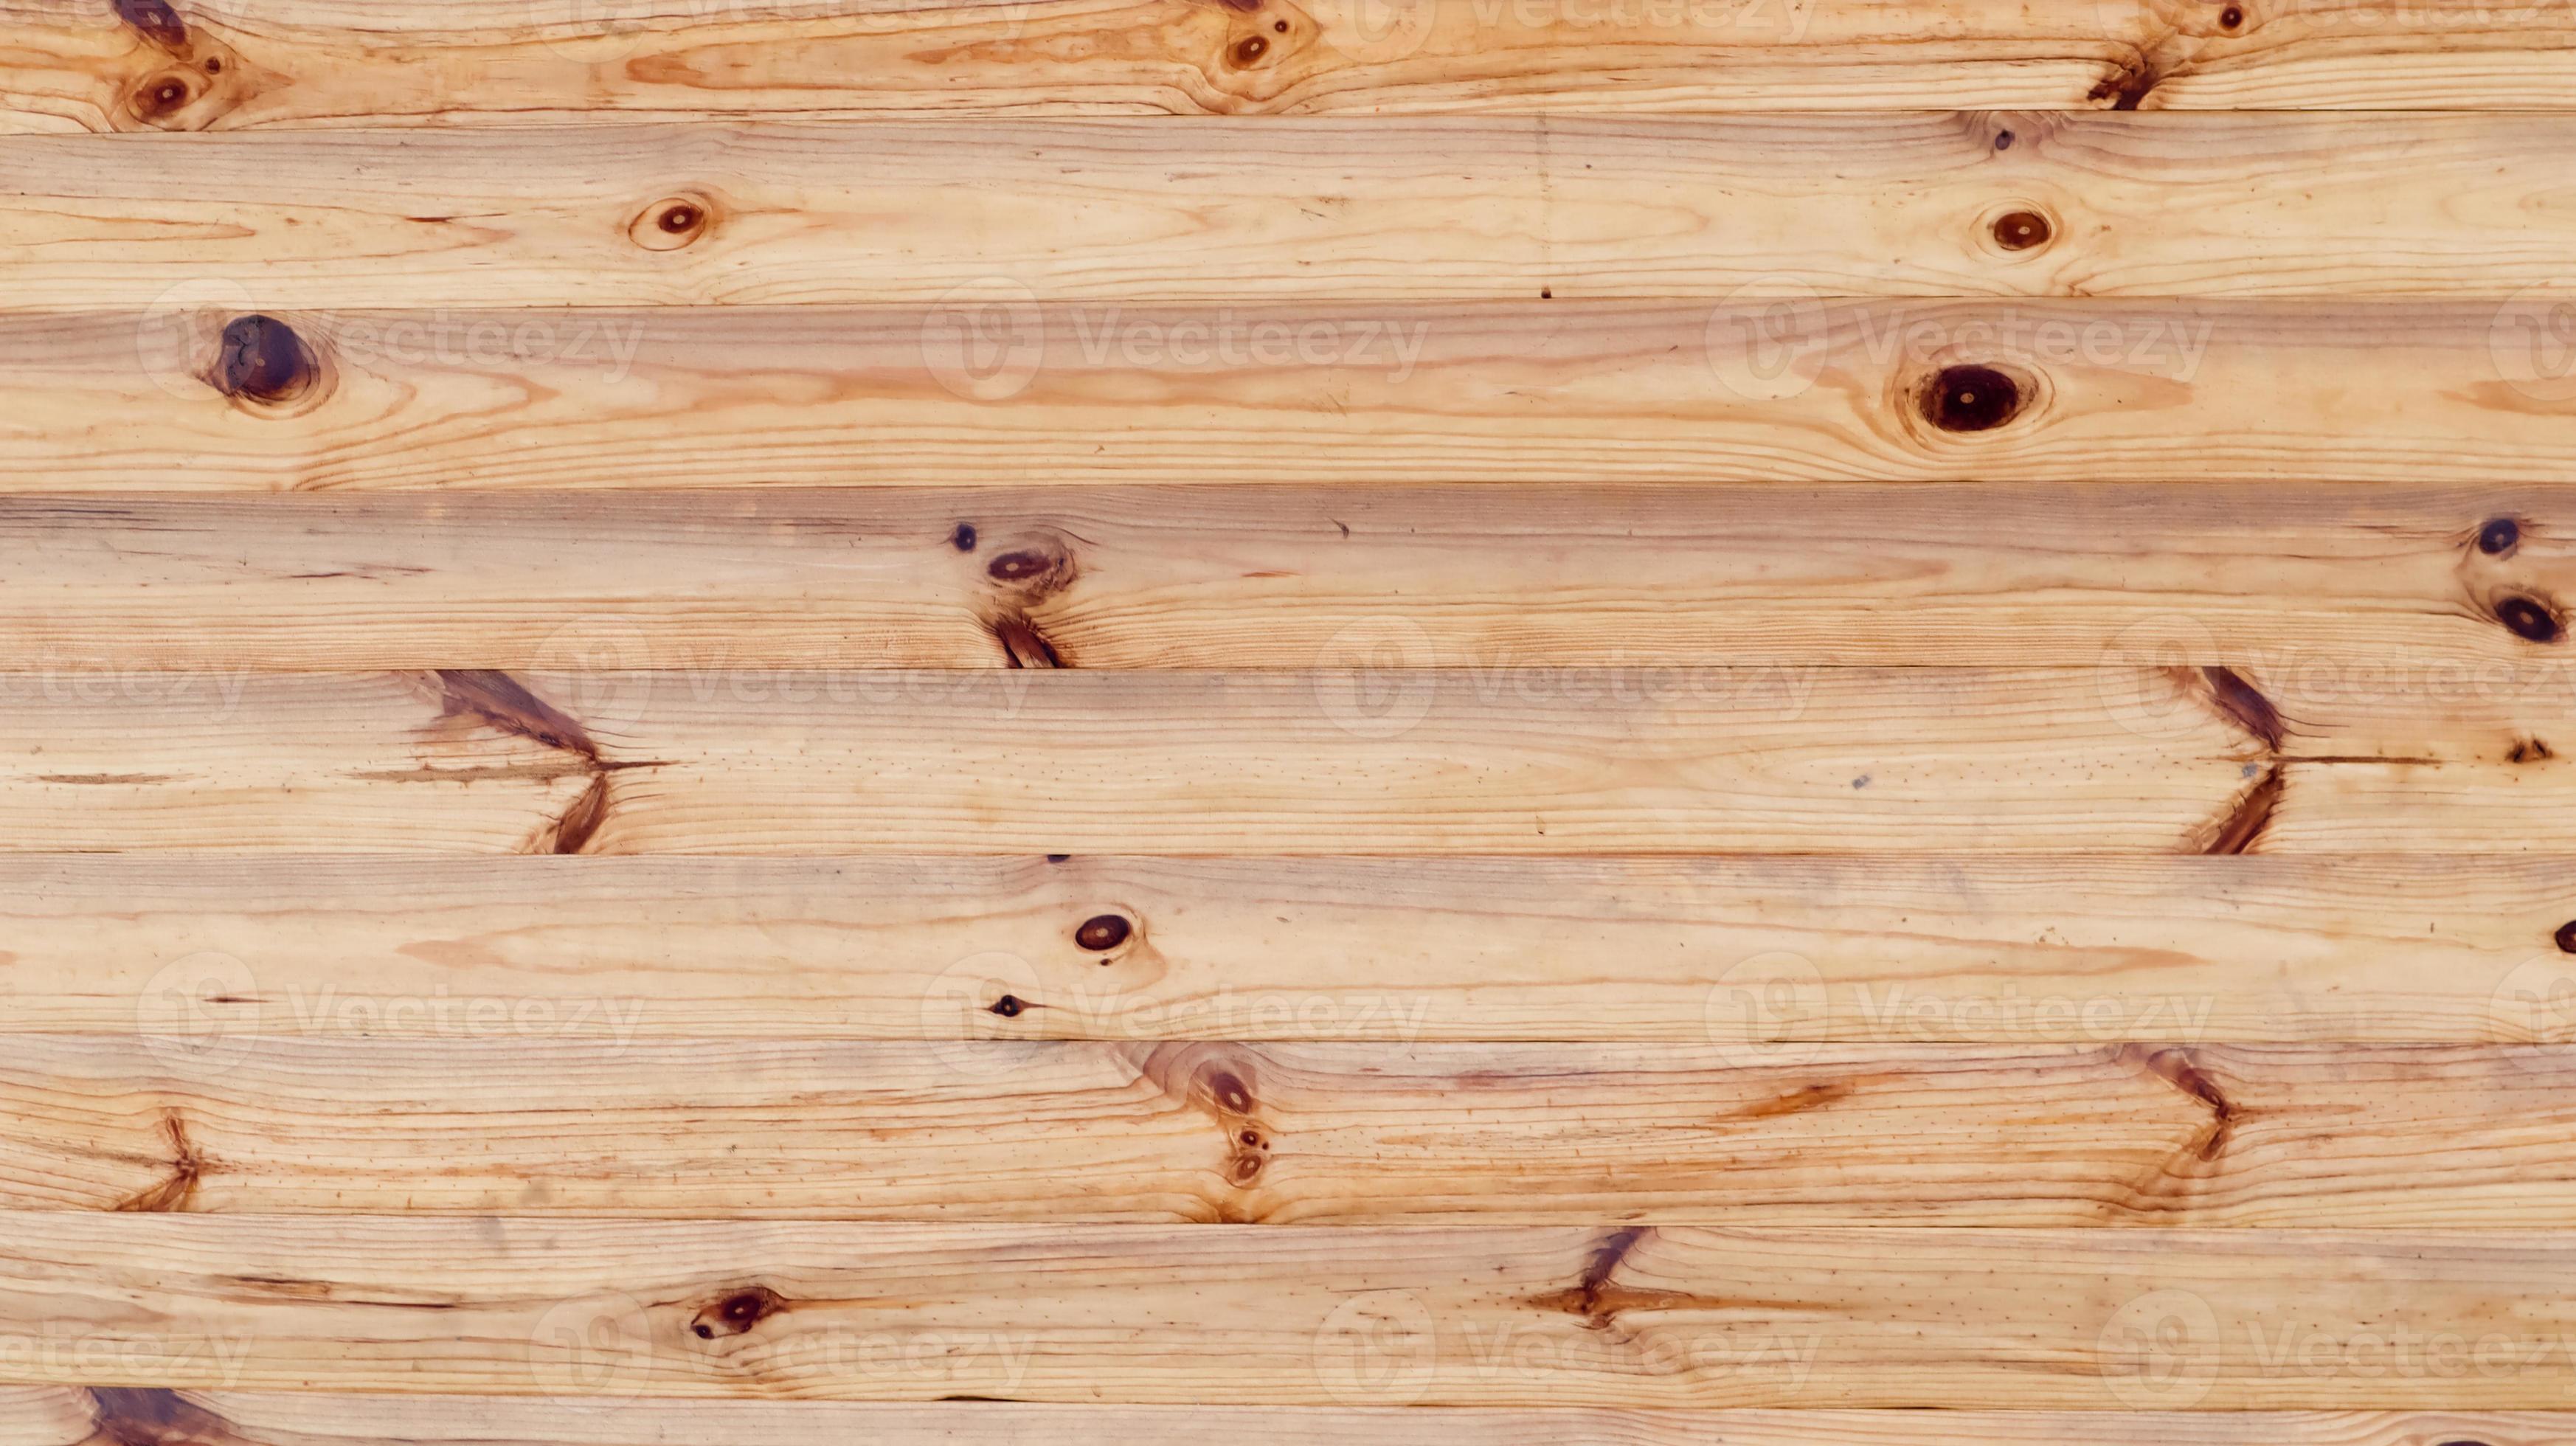 Vân gỗ là một trong những đặc tính khác biệt của từng loại gỗ, tạo nên vẻ đẹp độc đáo và đặc trưng cho sản phẩm được làm từ gỗ. Hãy đắm mình trong những hình ảnh về vân gỗ độc đáo và tinh tế trong không gian thiết kế nội thất để trải nghiệm vẻ đẹp ấn tượng của chất liệu này.